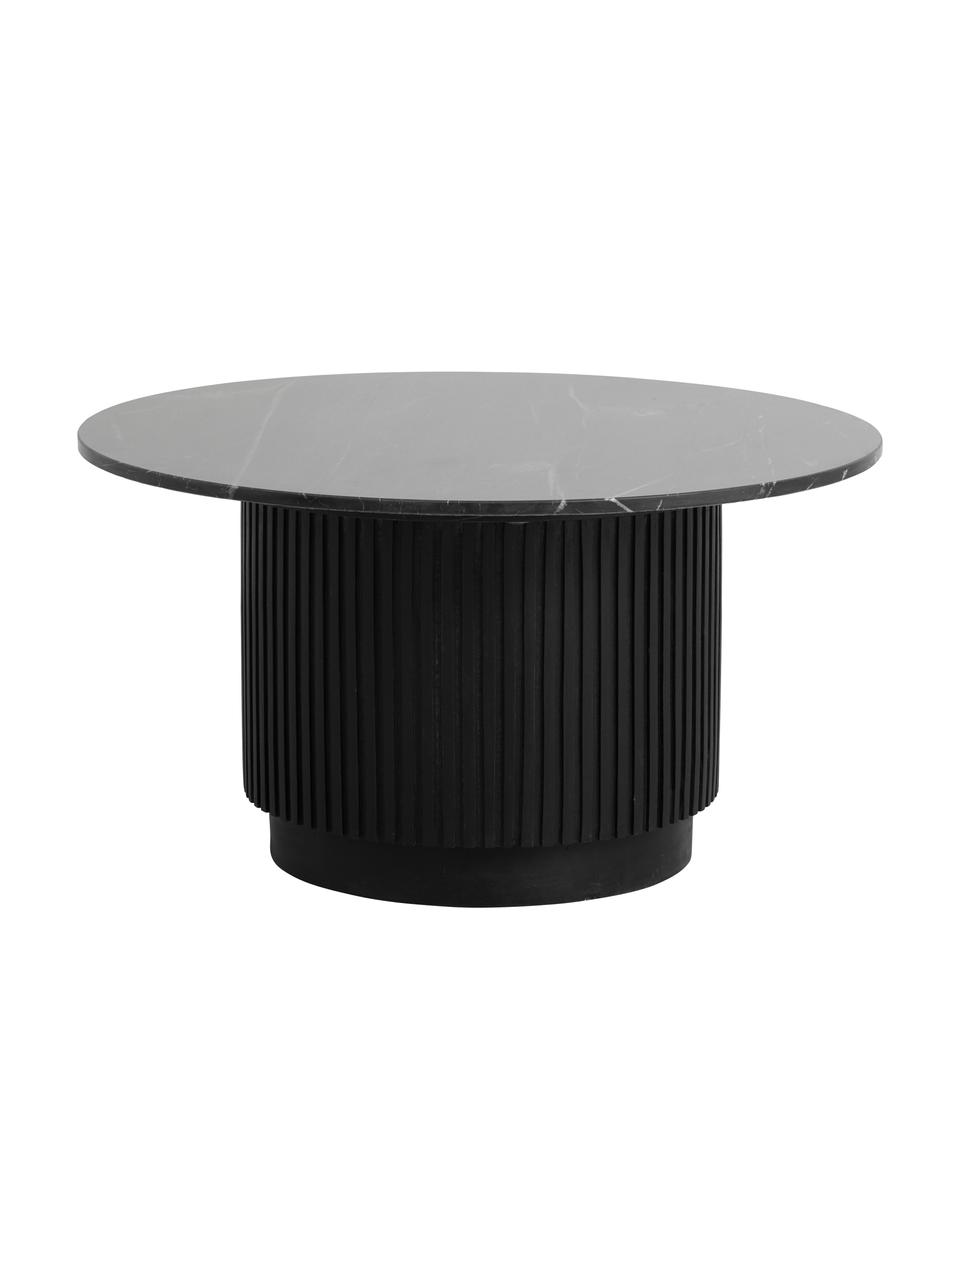 Kulatý konferenční stolek s mramorovou deskou stolu Erie, Černá, Ø 75 cm